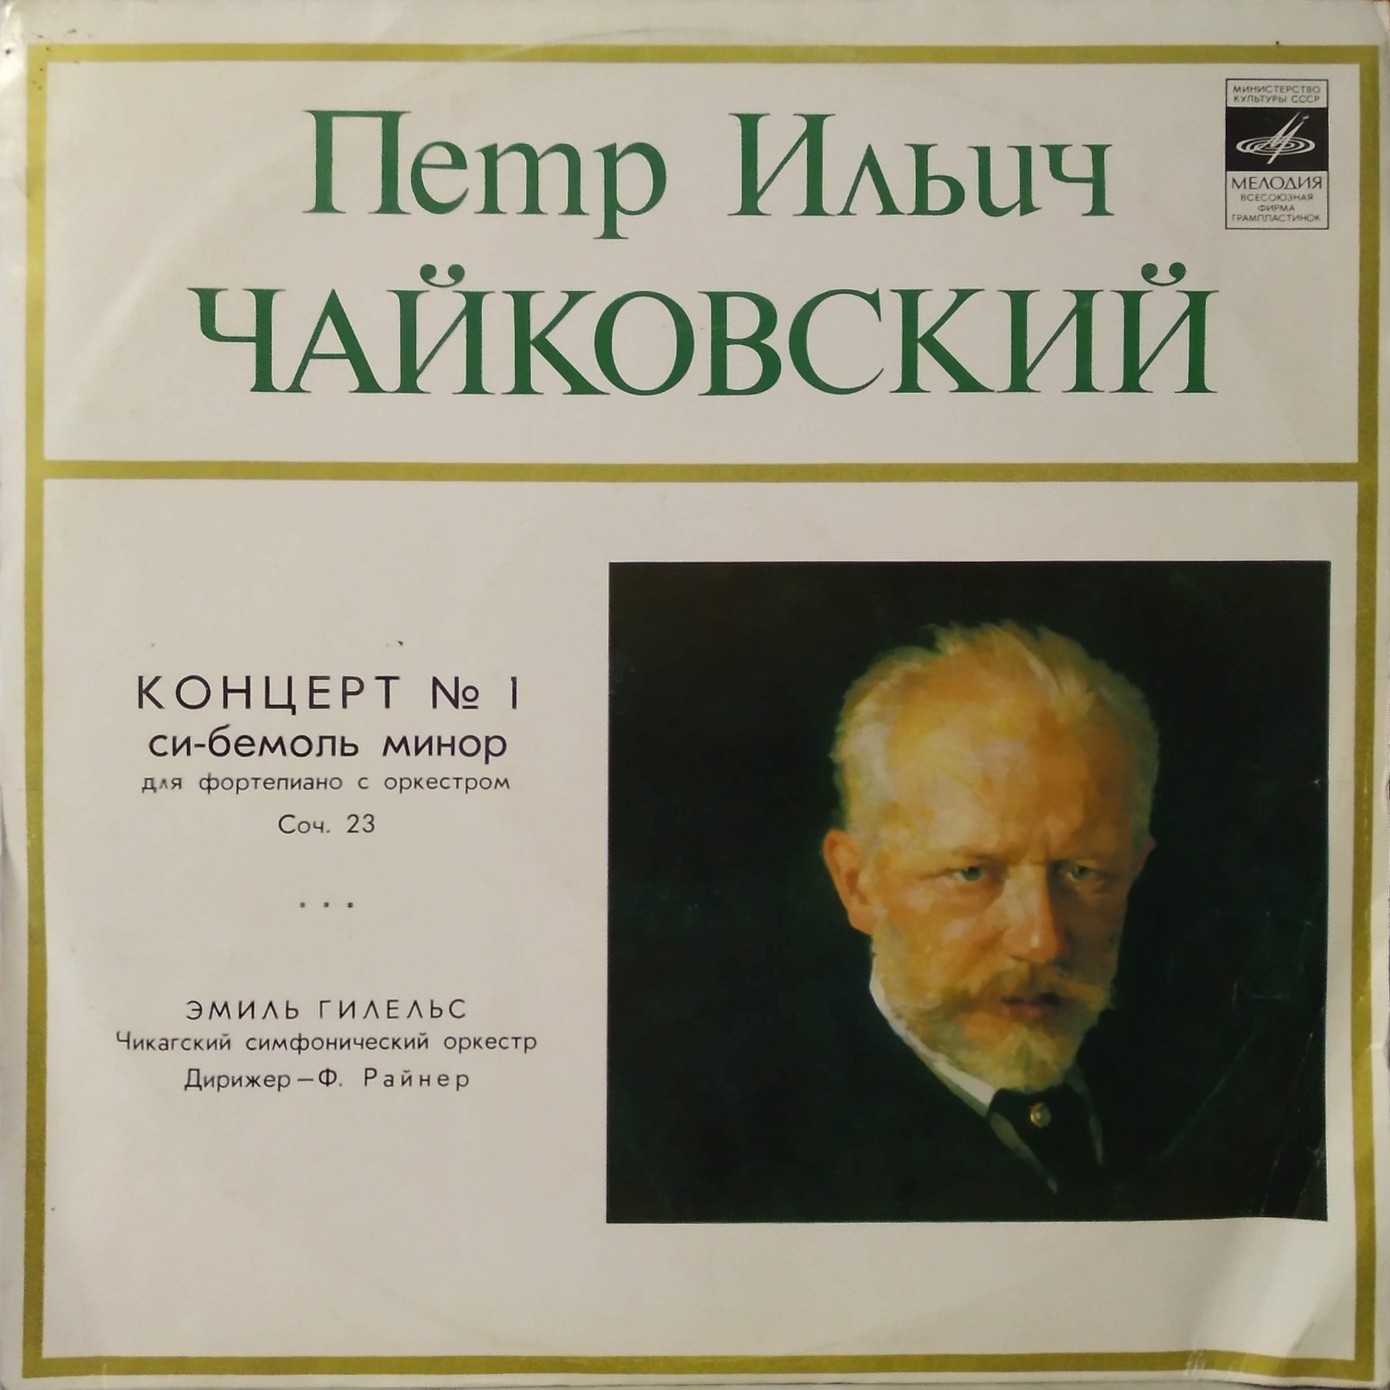 П. Чайковский: Концерт № 1 для ф-но с оркестром (Э. Гилельс)